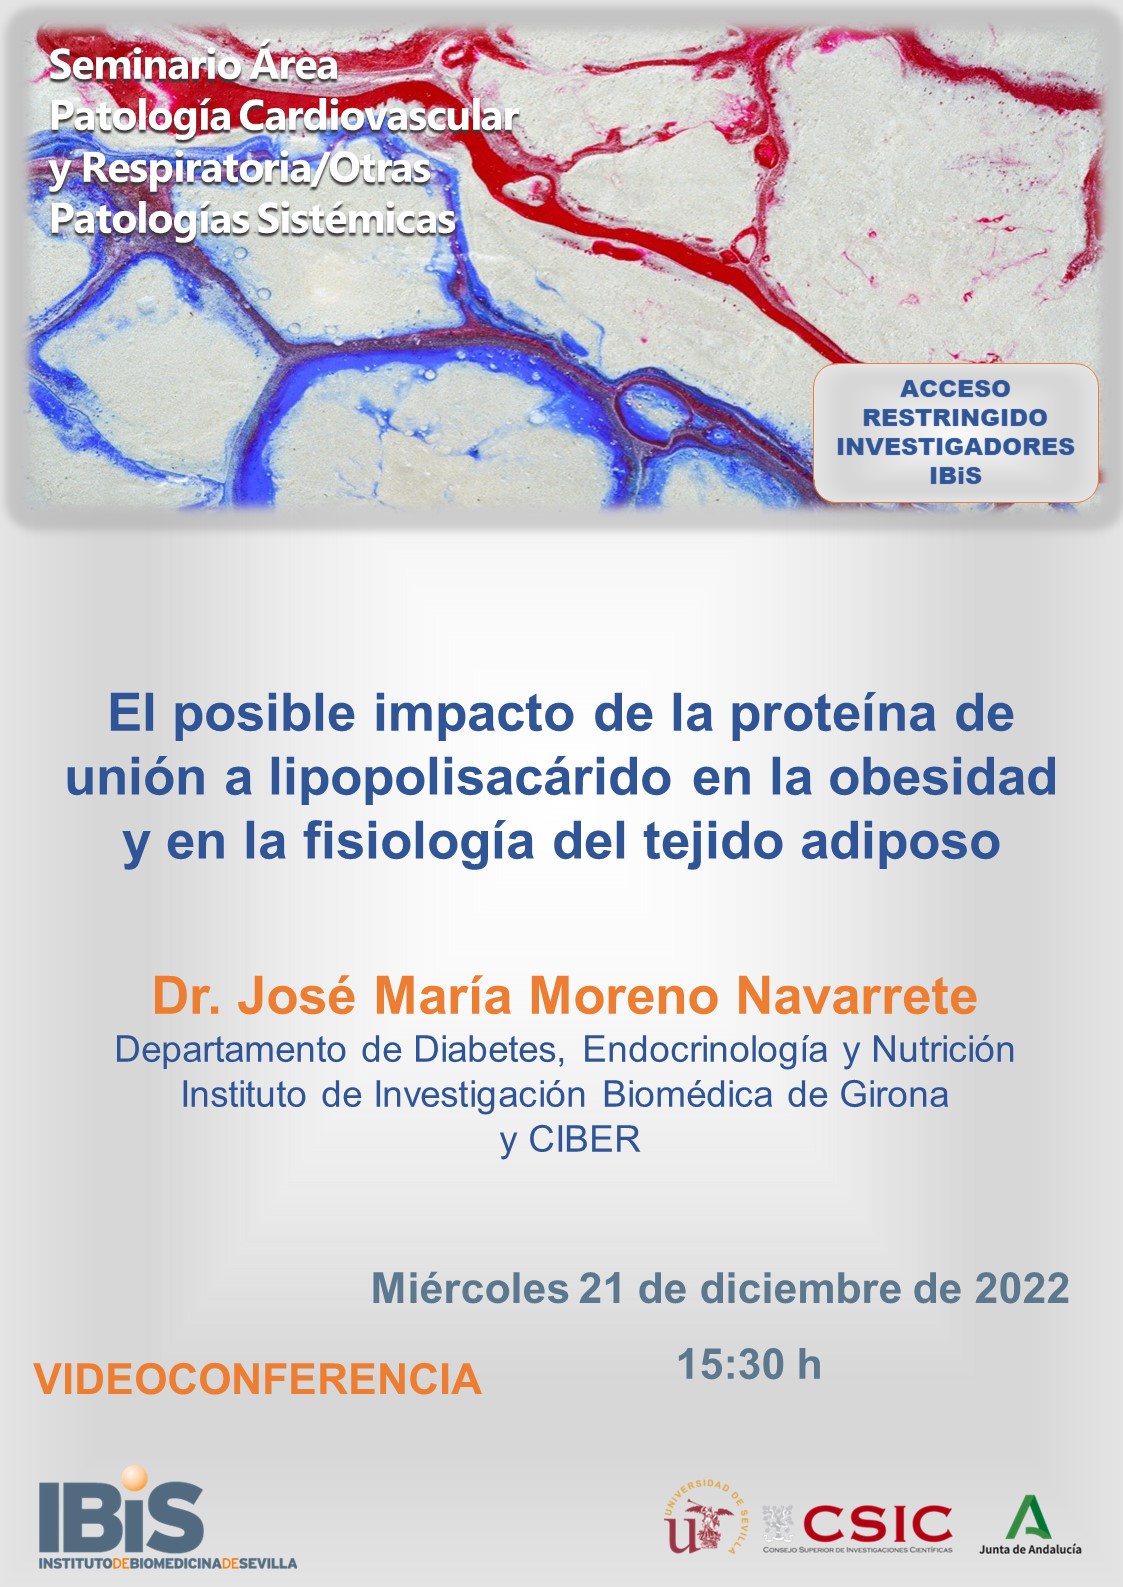 Poster: El posible impacto de la proteína de unión a lipopolisacárido en la obesidad y en la fisiología del tejido adiposo